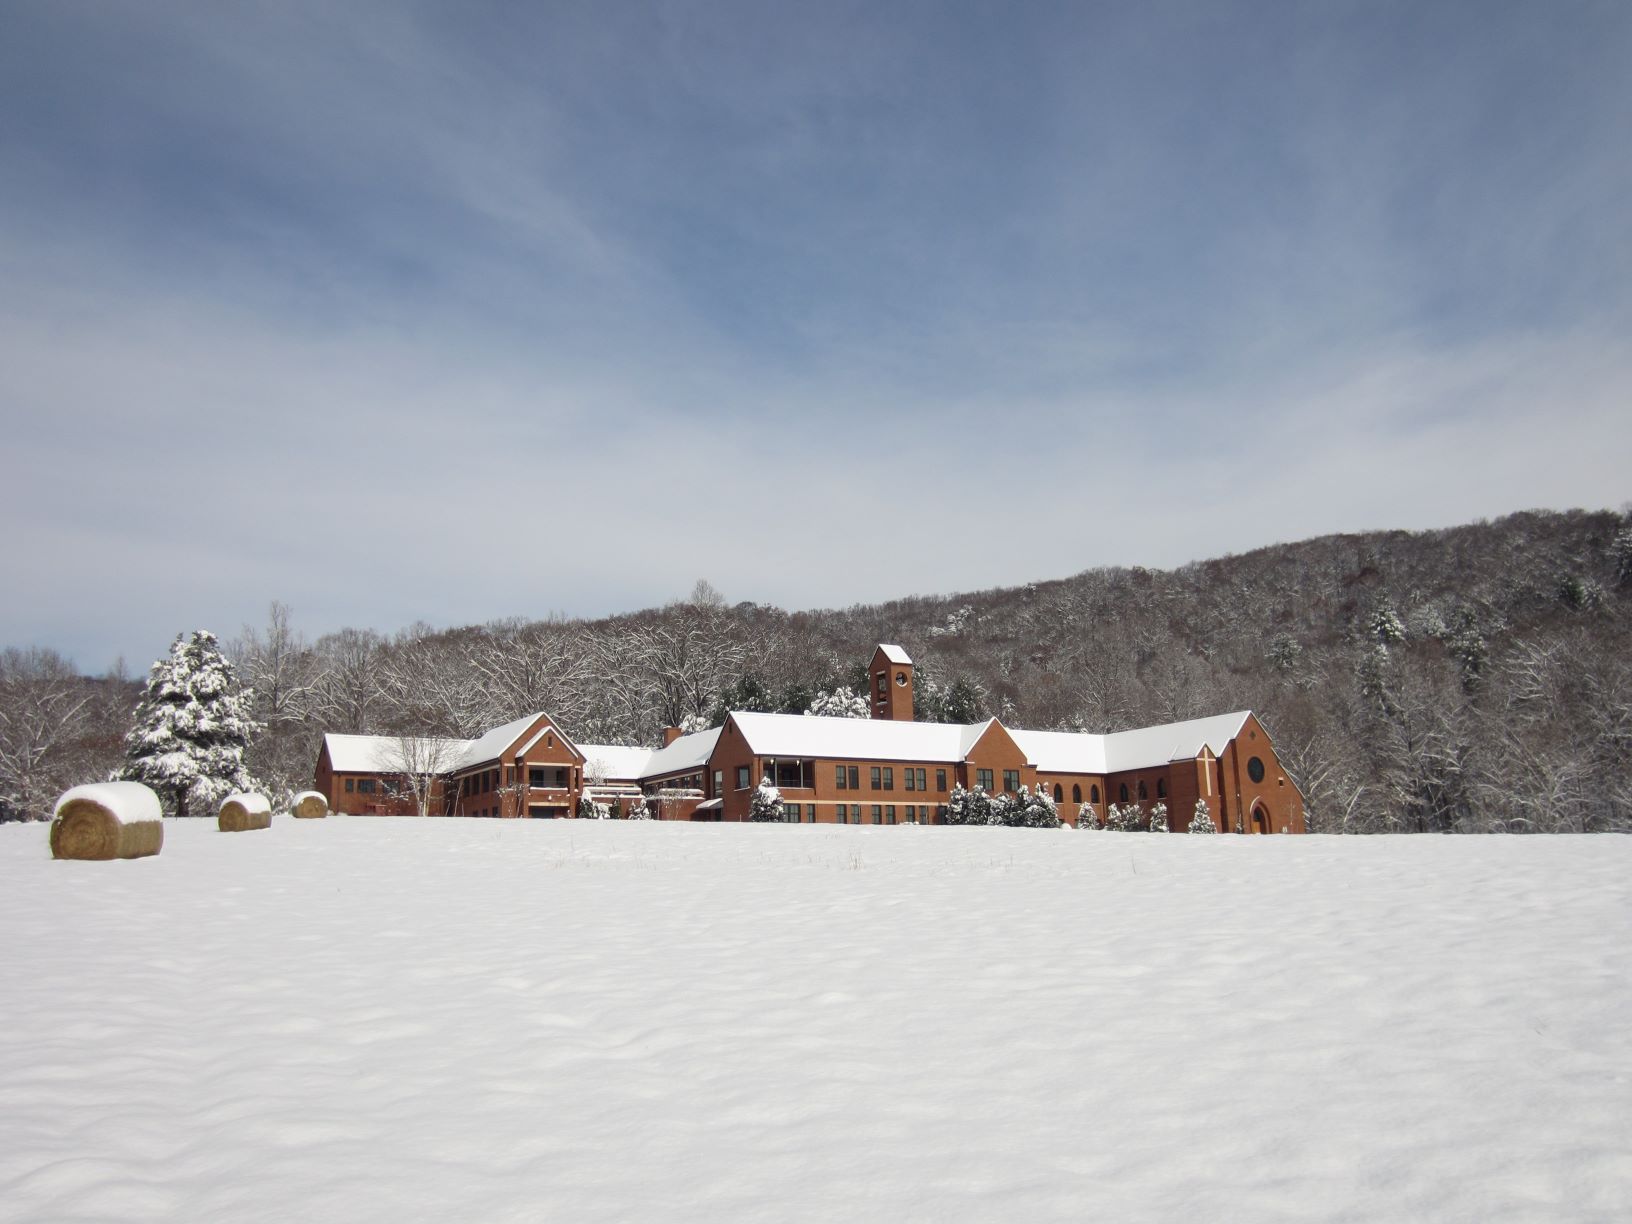 Monastery & snow